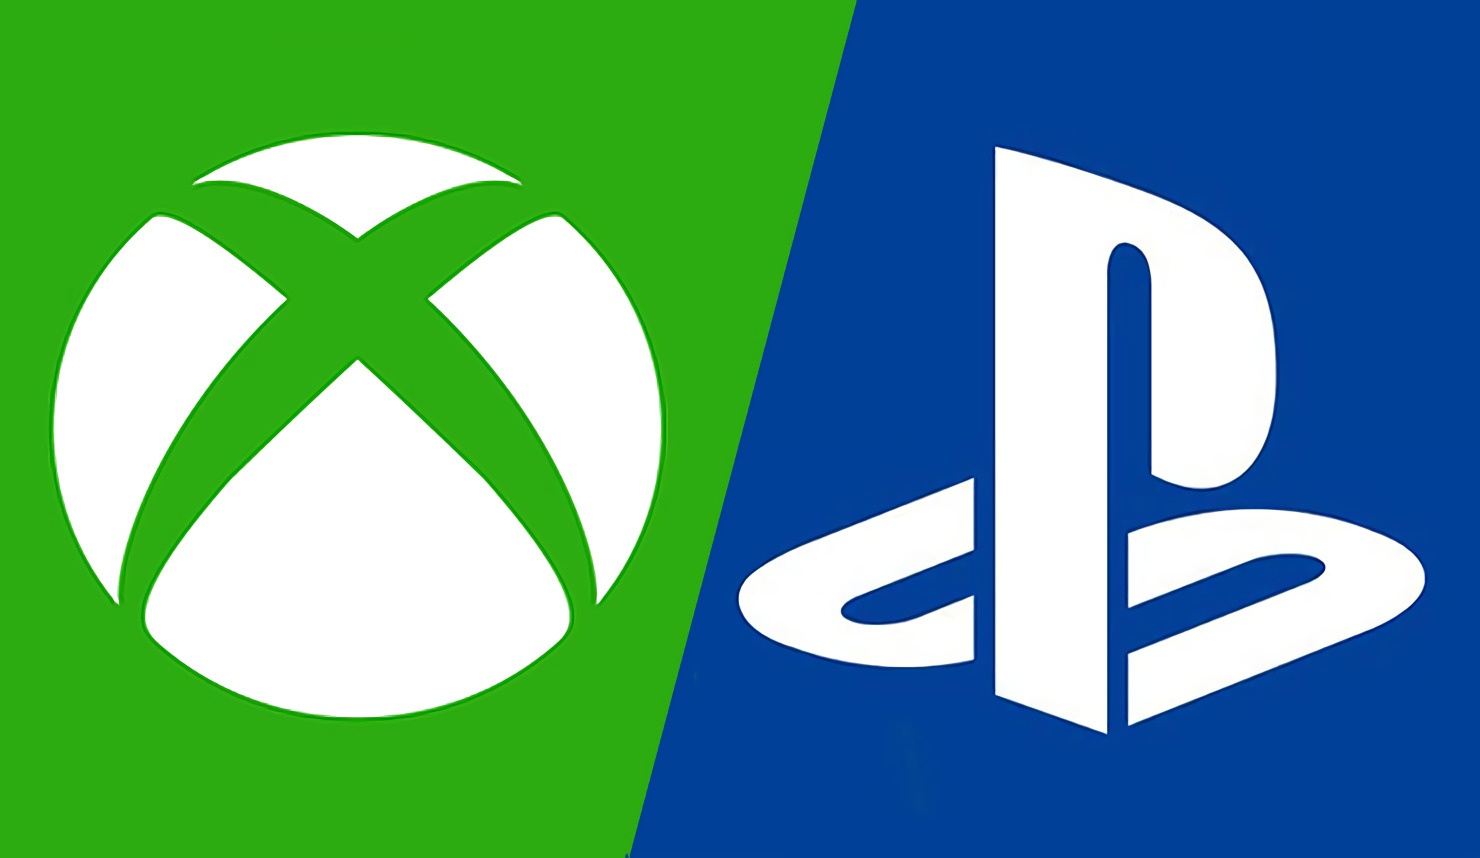 Xbox and Playstation logos